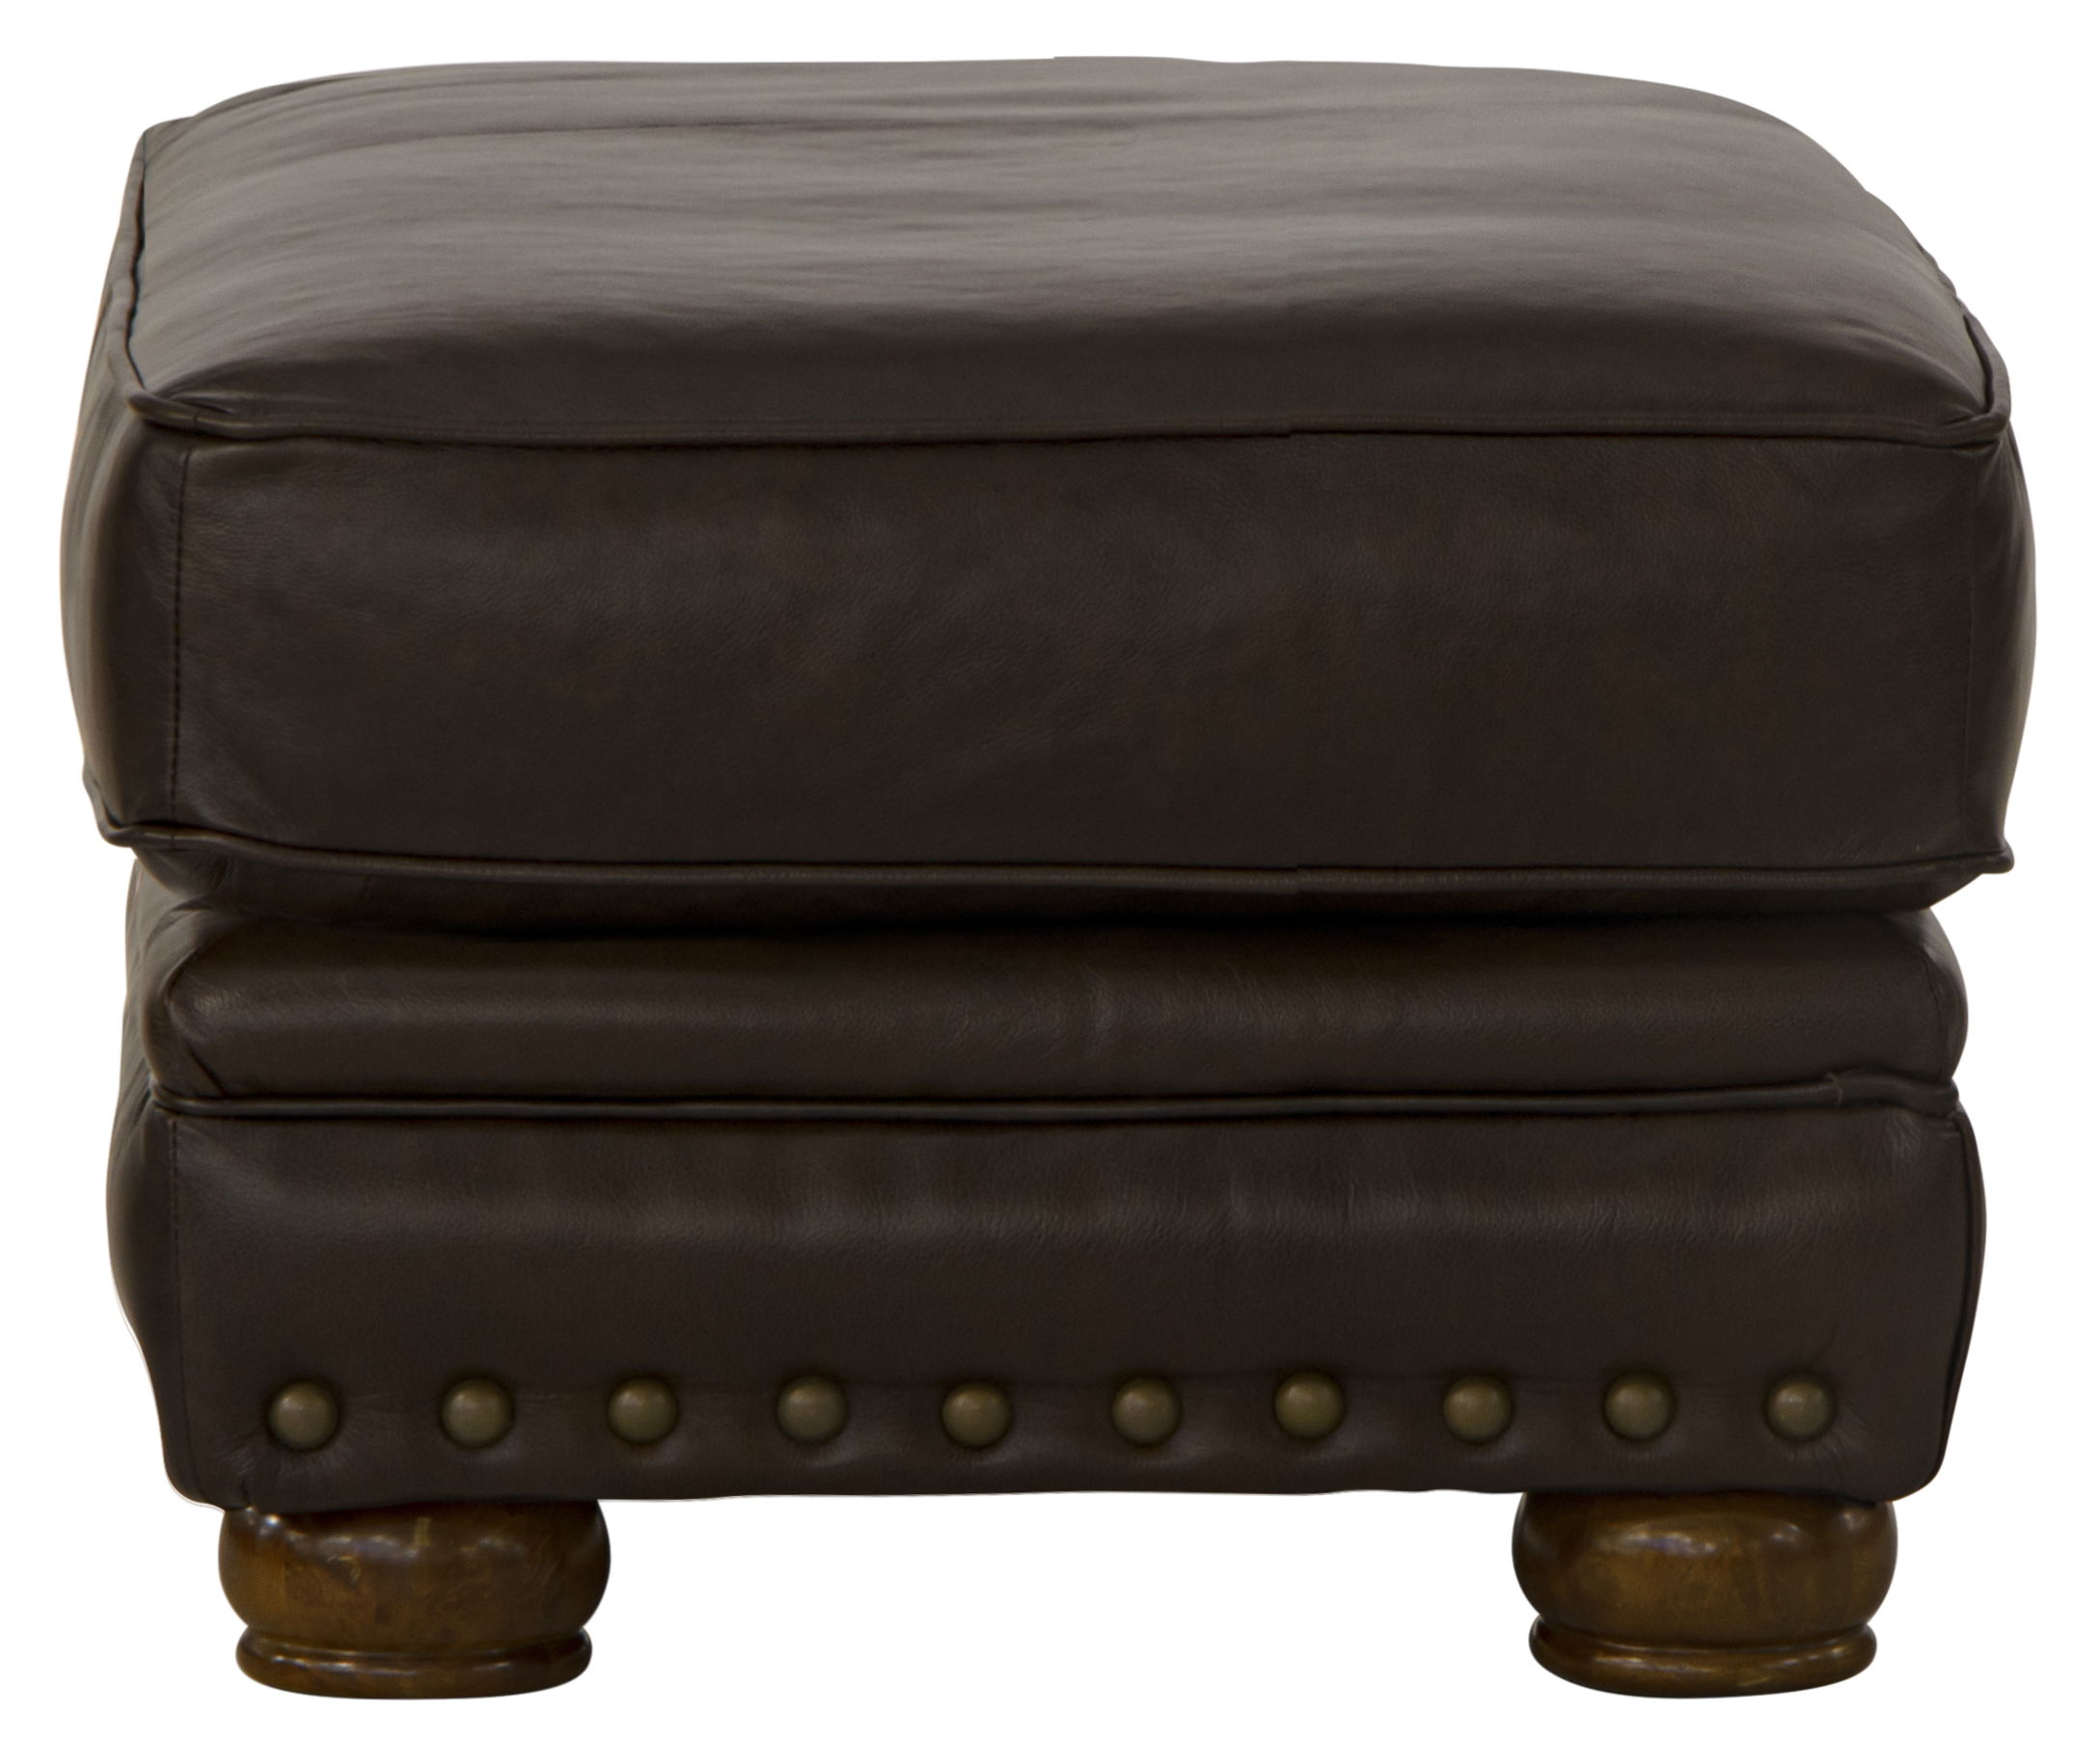 Roberto - Ottoman - Cocoa - Leather - 5th Avenue Furniture